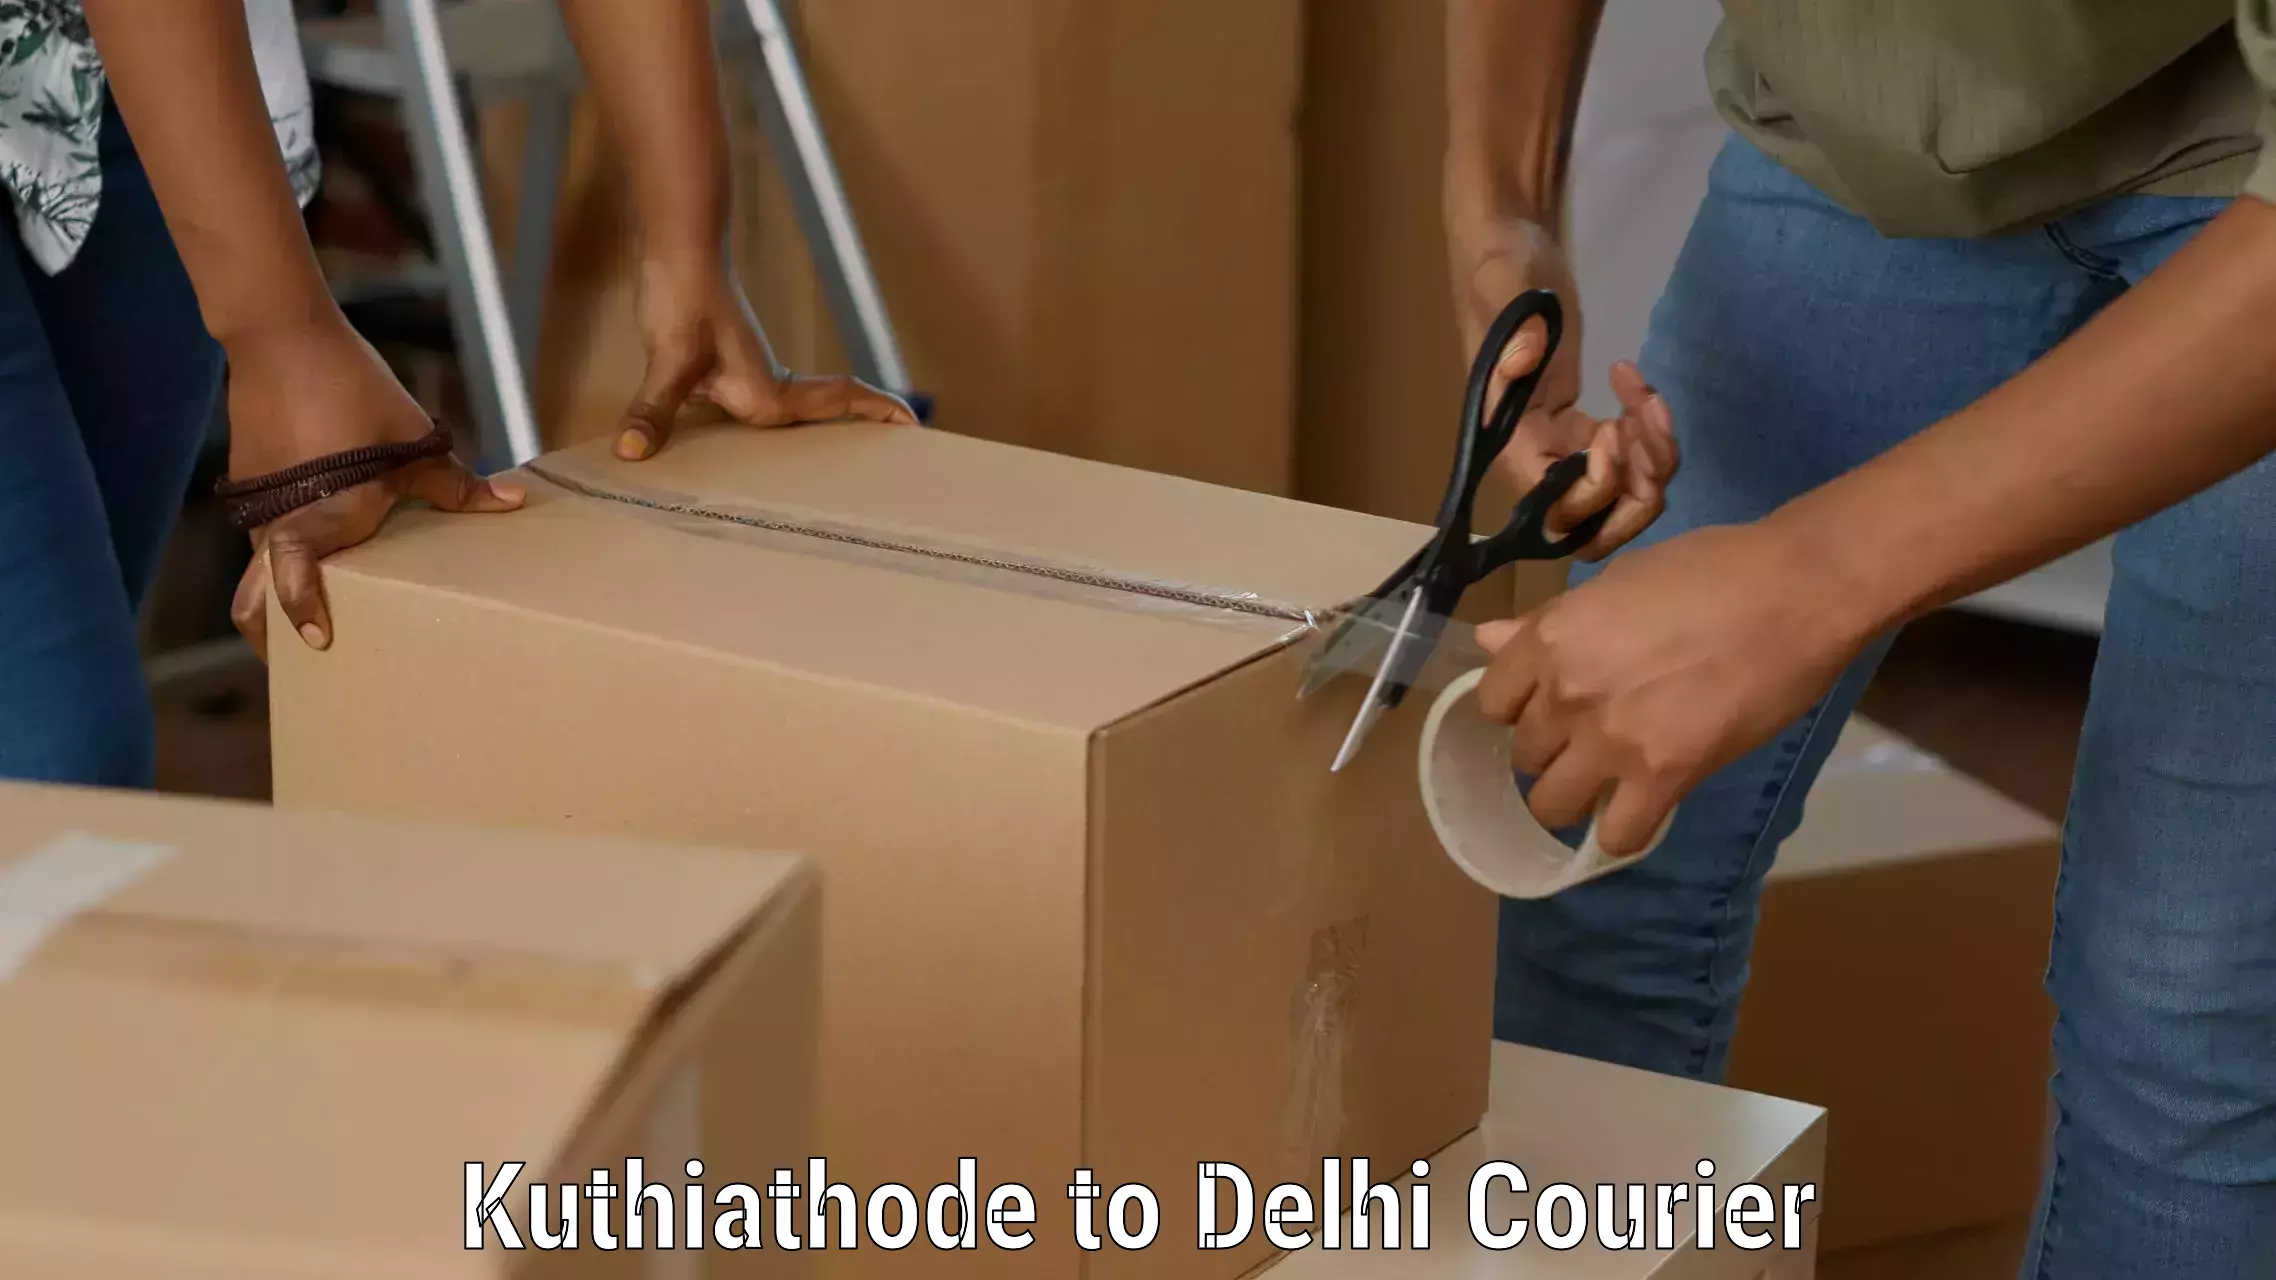 Courier service partnerships in Kuthiathode to Ashok Vihar